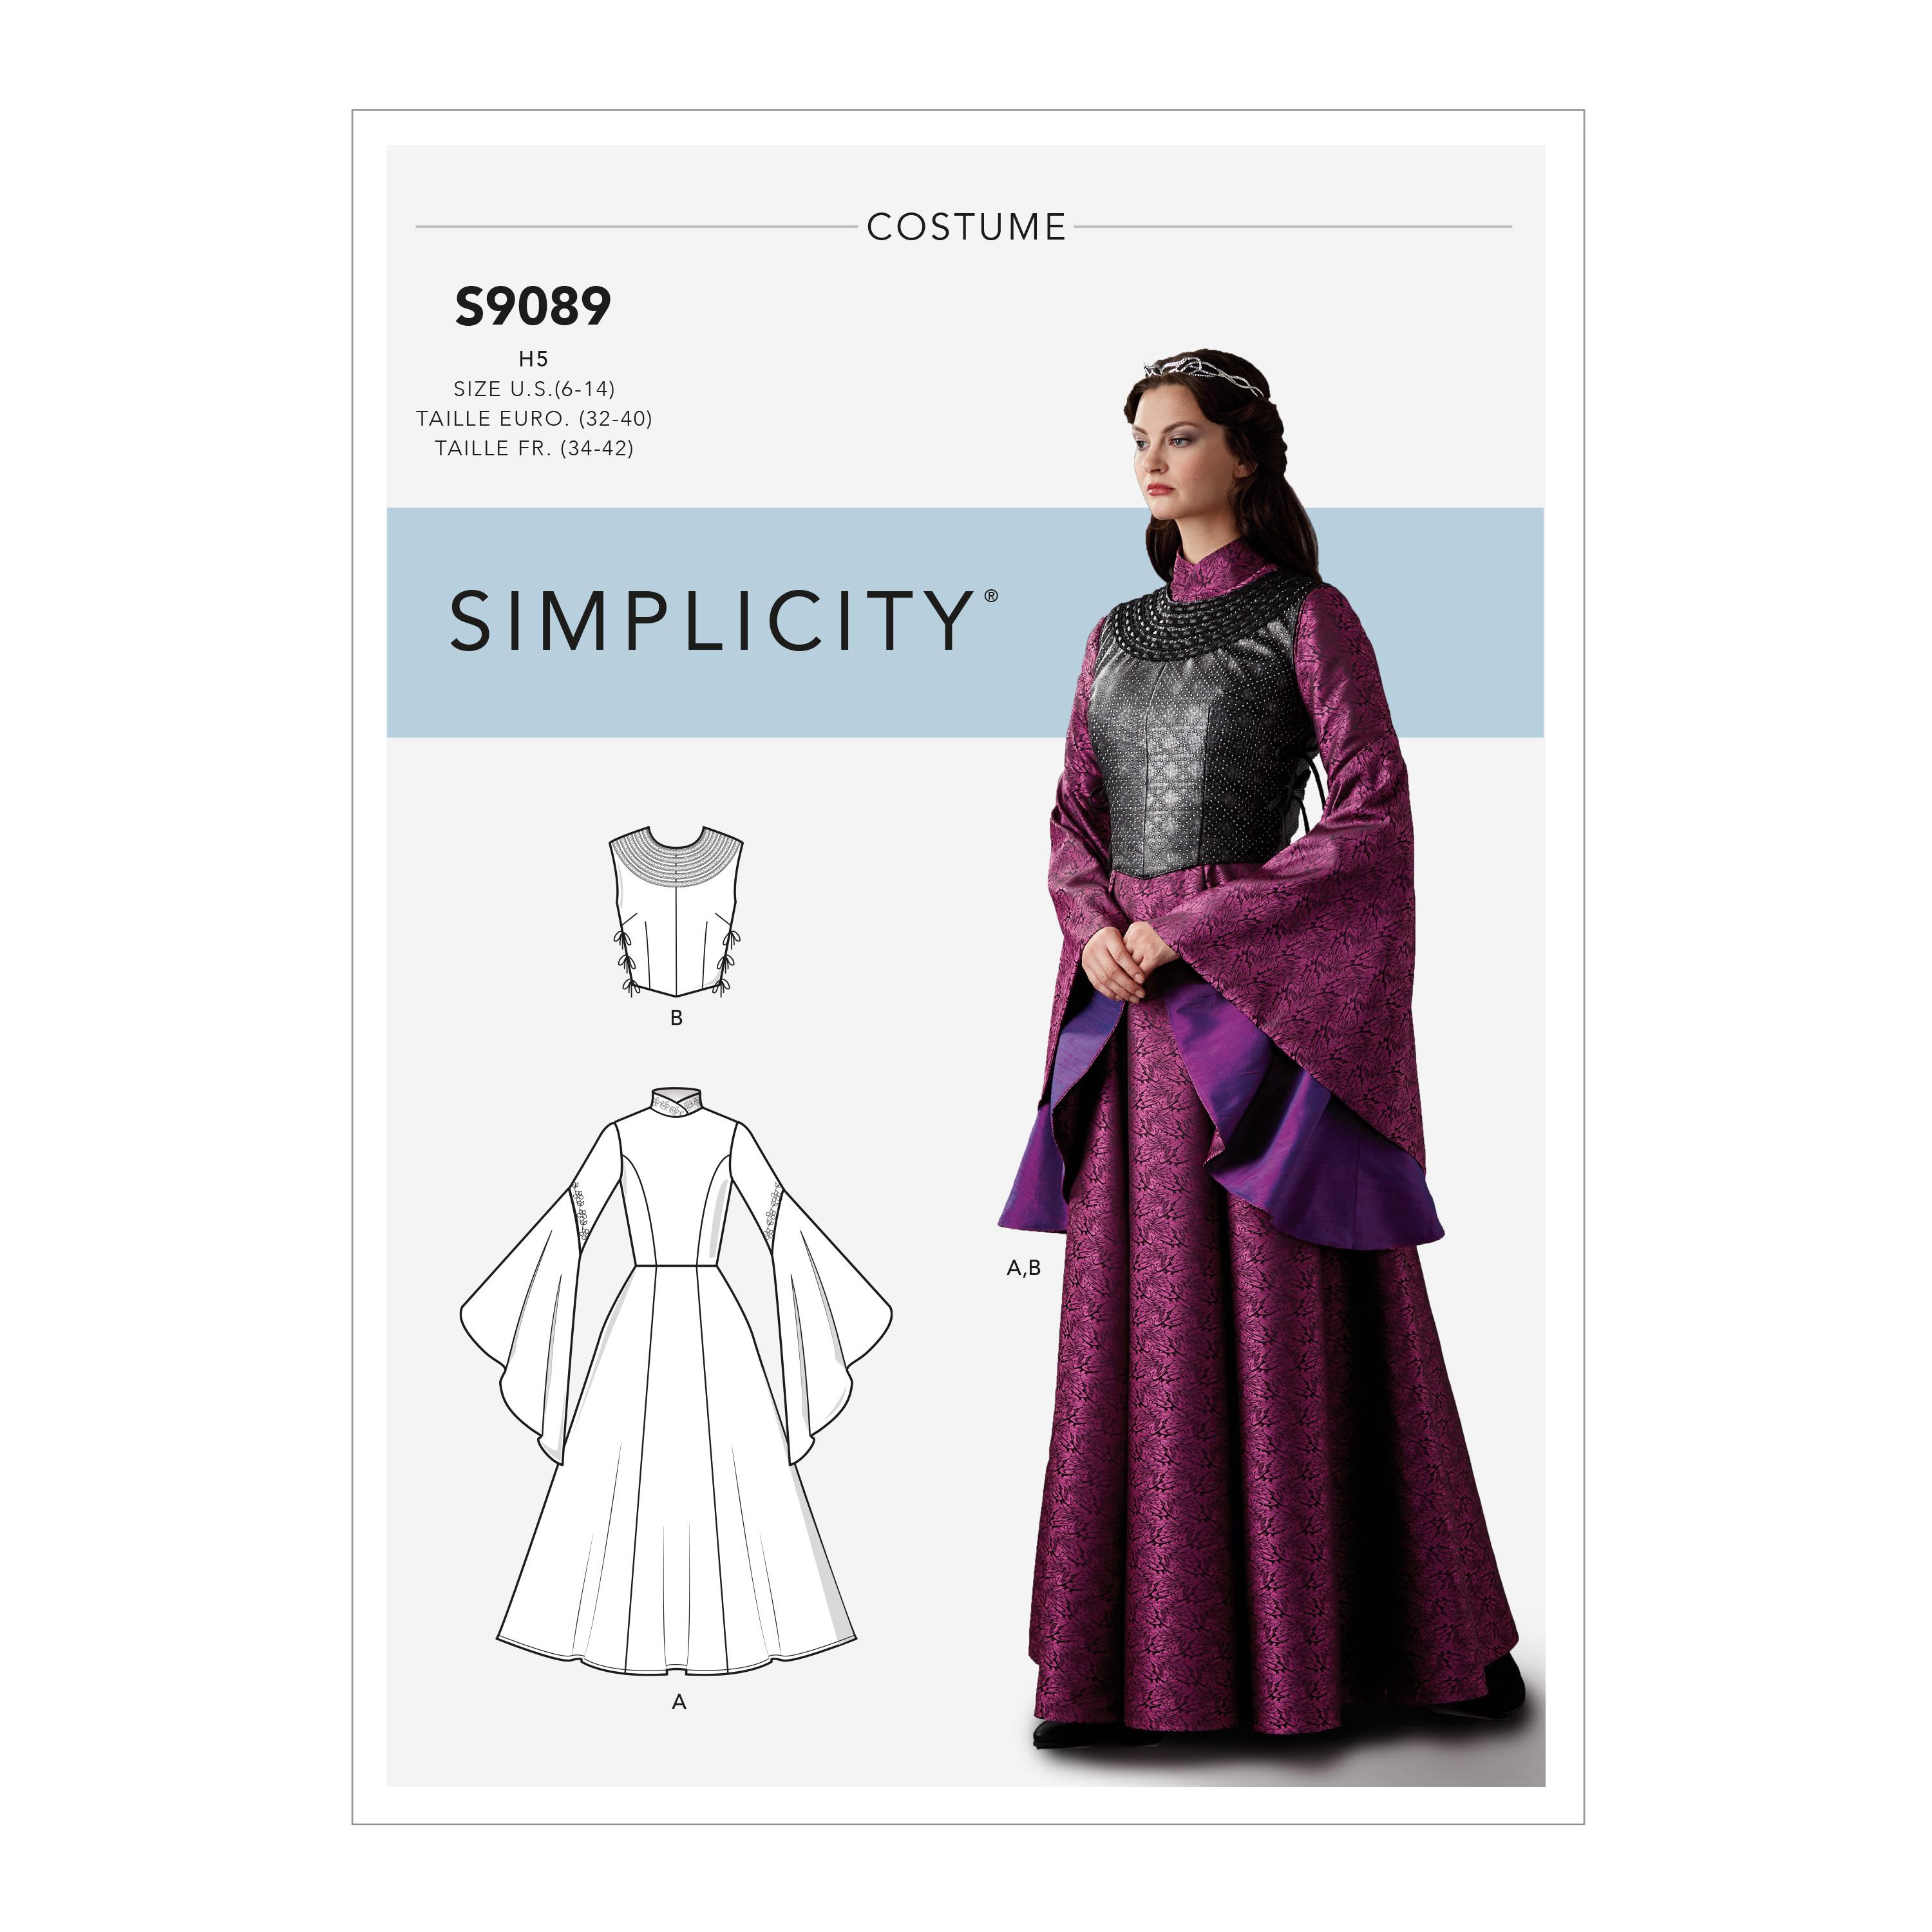 Simplicity S9089 Misses' Fantasy Costume